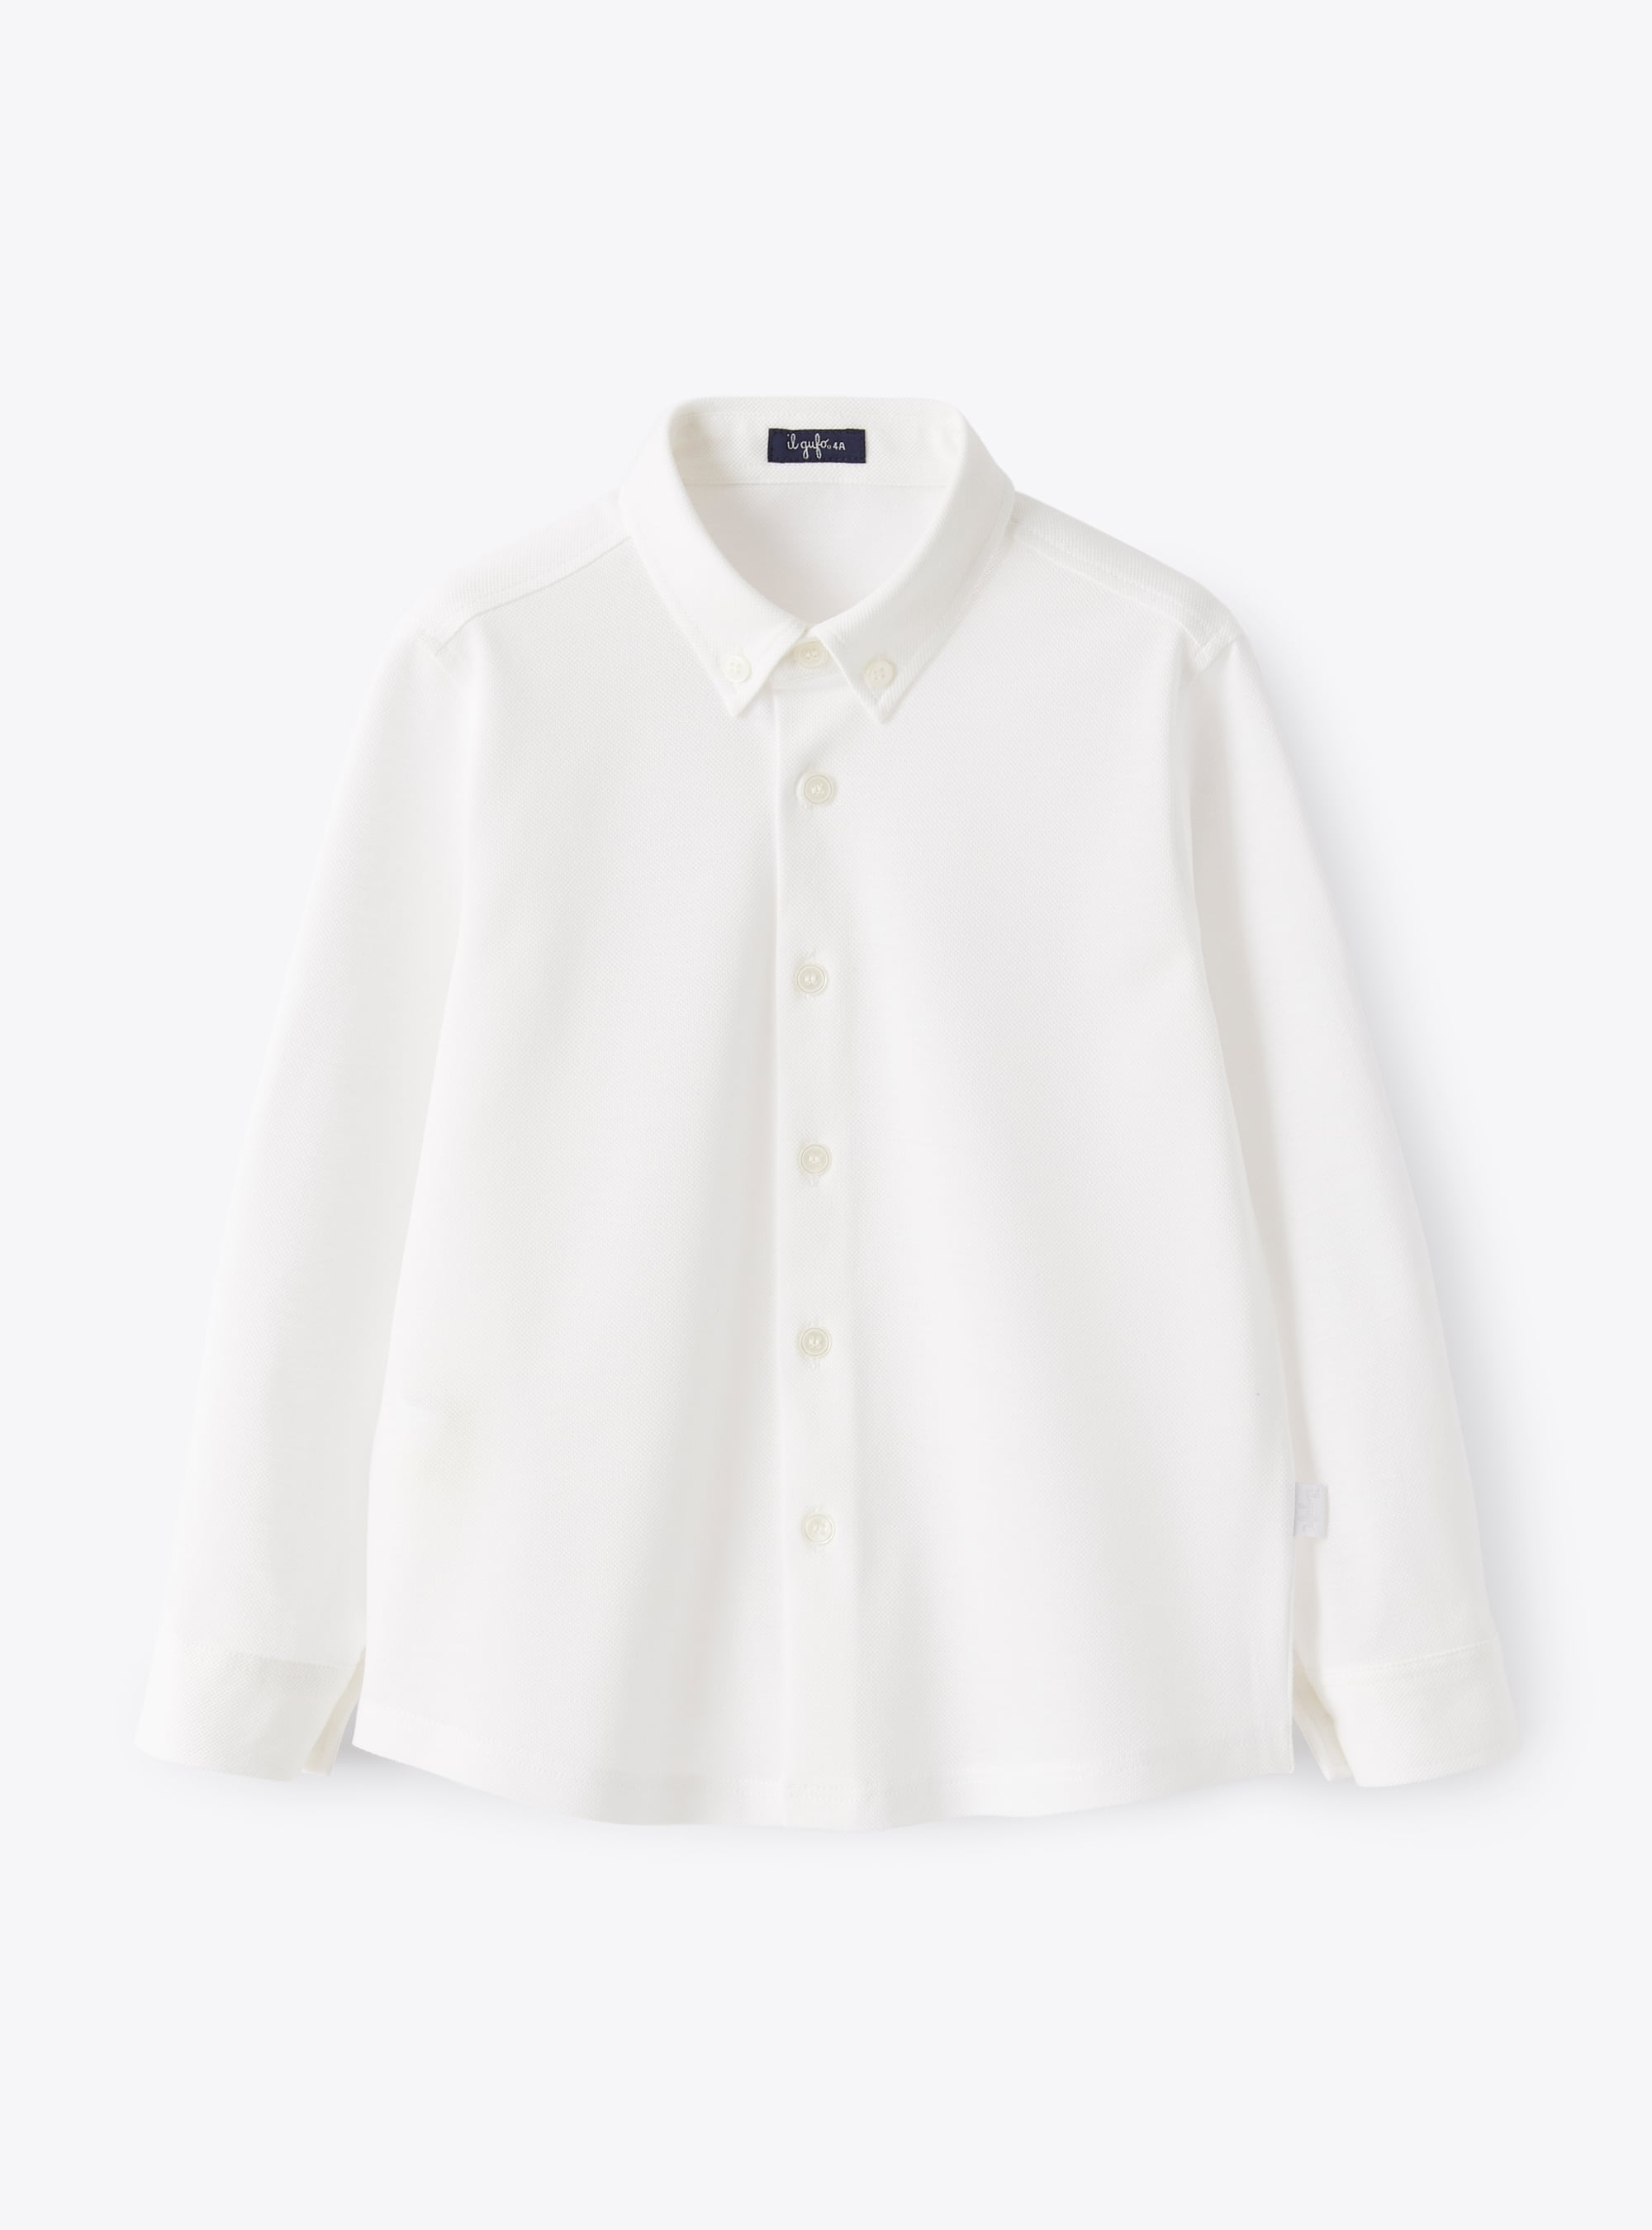 Hemd aus Oxford-Jersey weiß - Hemden - Il Gufo